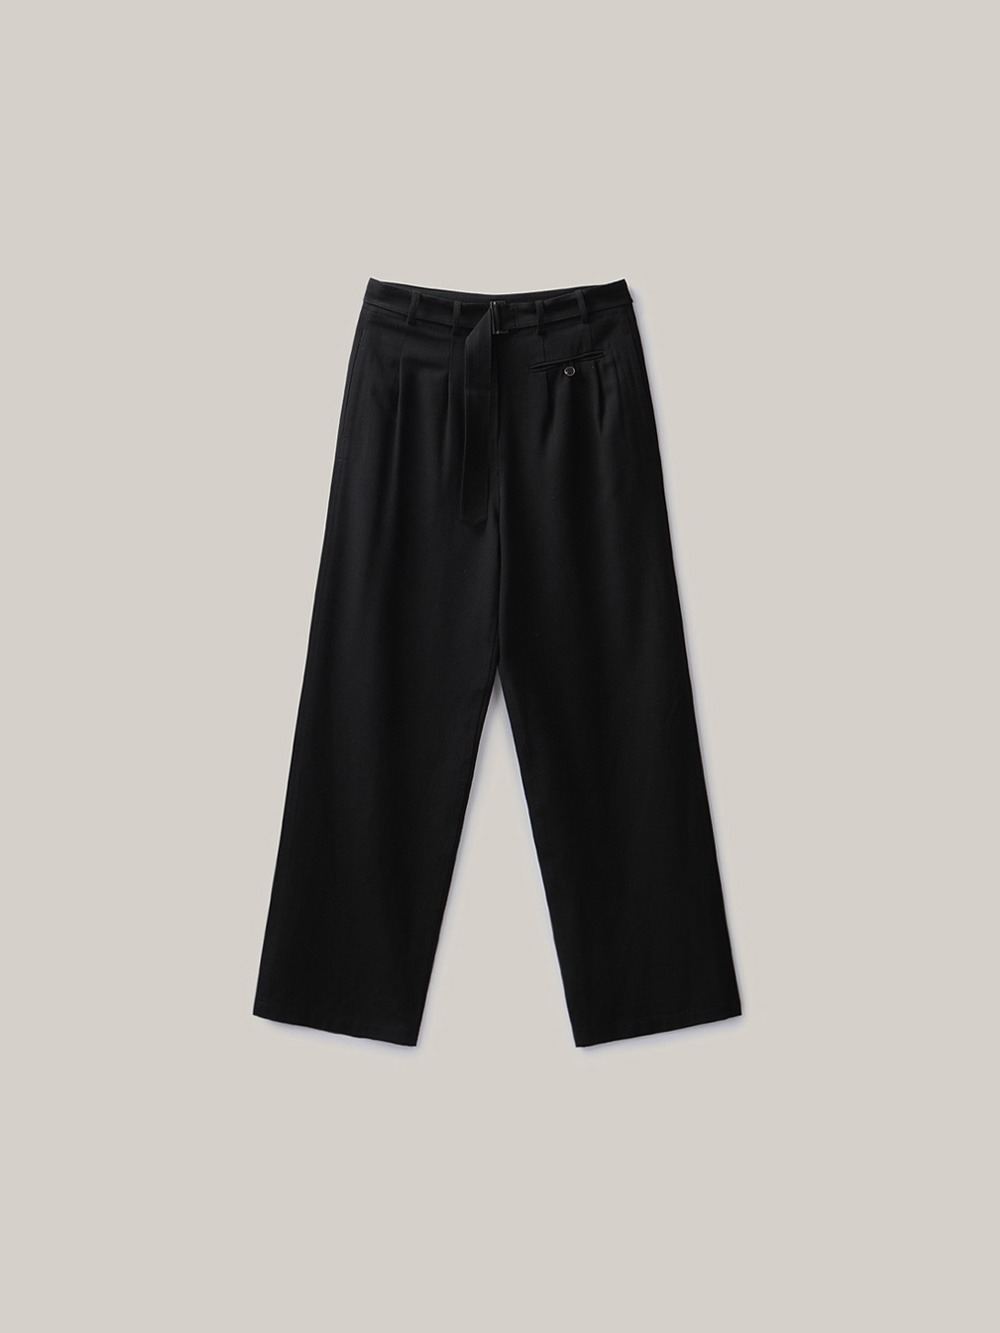 Belted Tuck Pants (black)